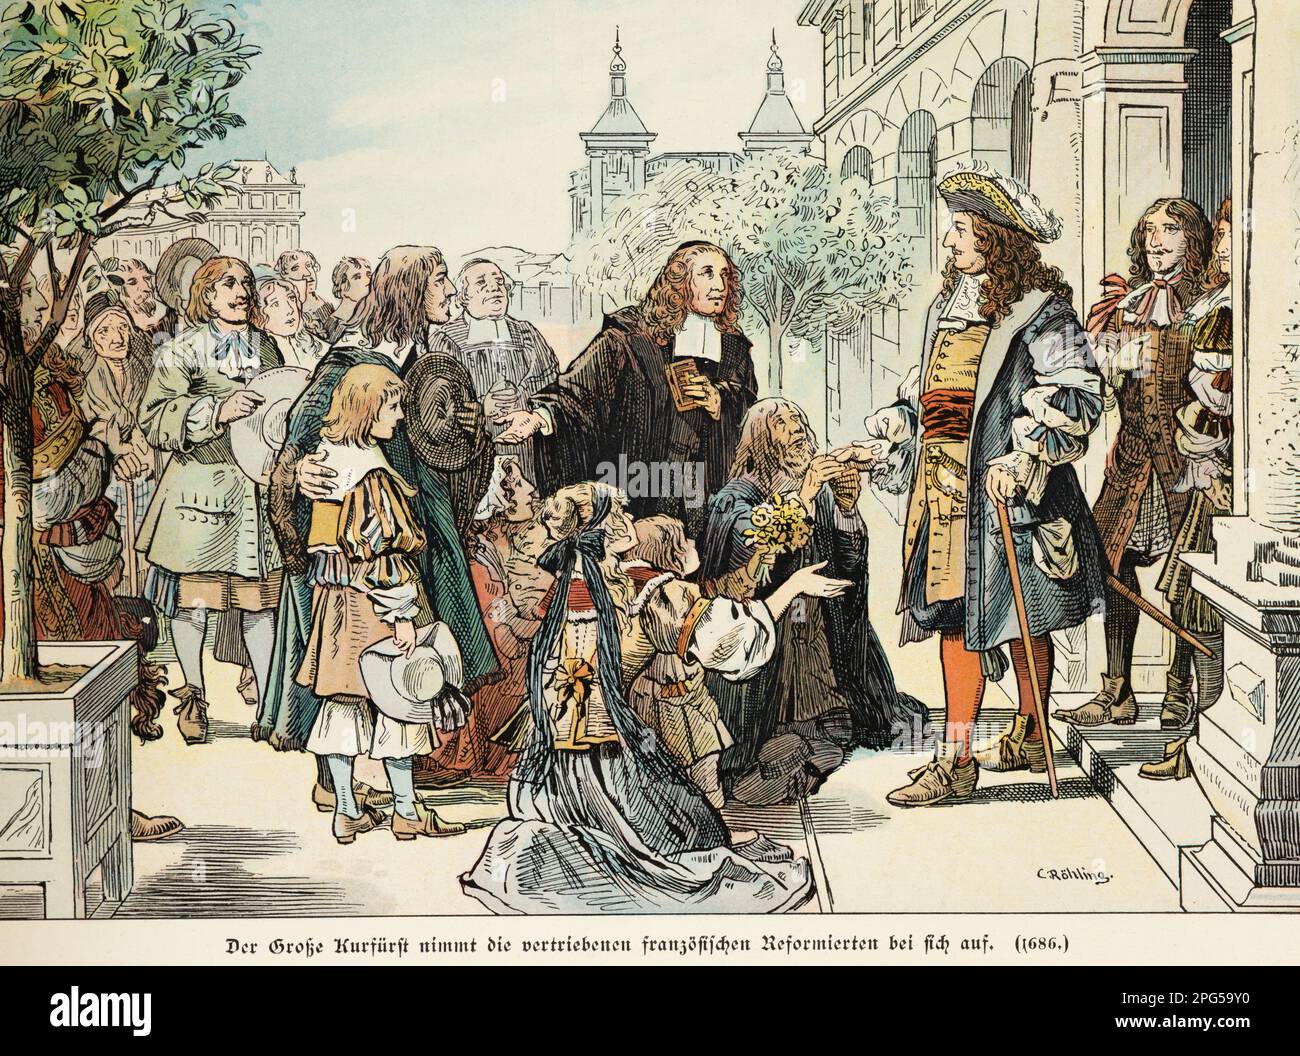 En 1686, le Prince Friedrich Wilhelm le Grand accueille les réformistes français dans son état, histoire du Hohenzollern, Prusse, illustration historique 1899 Banque D'Images